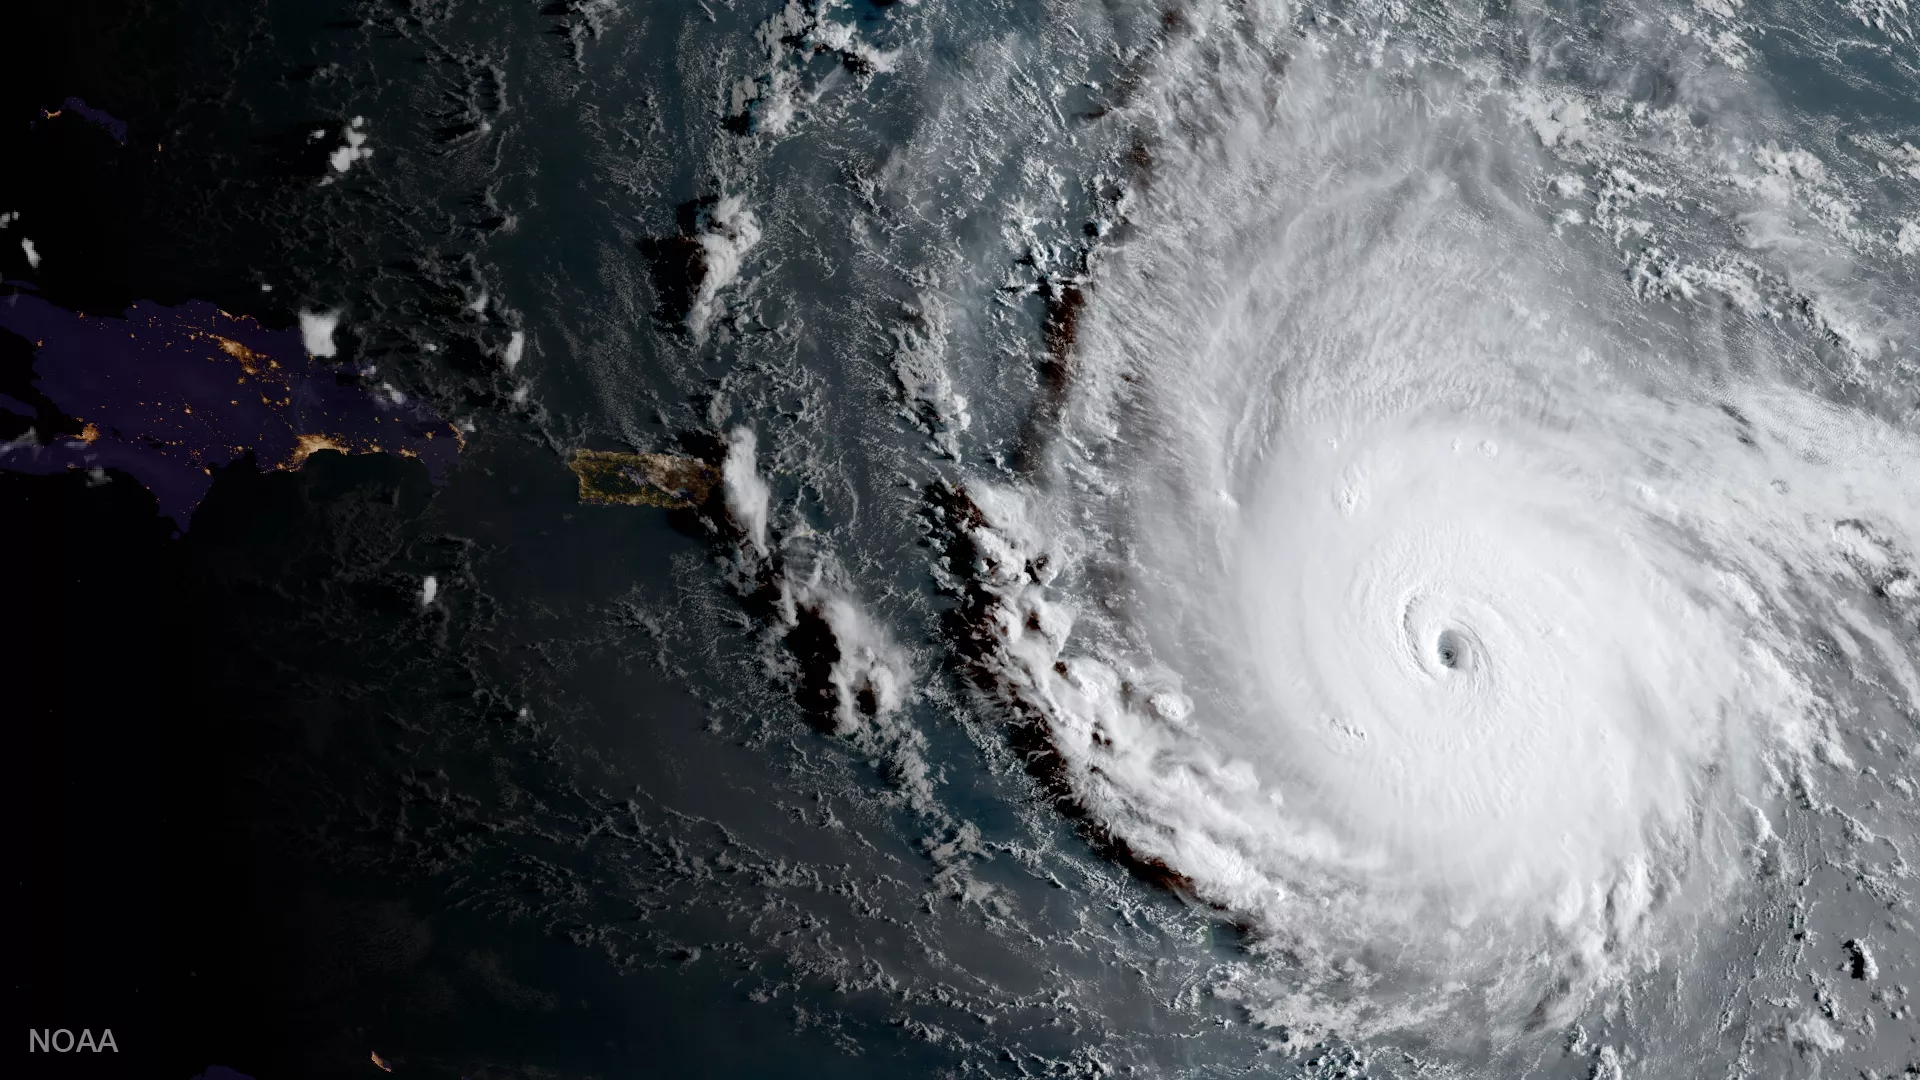 Image of Hurricane Iram